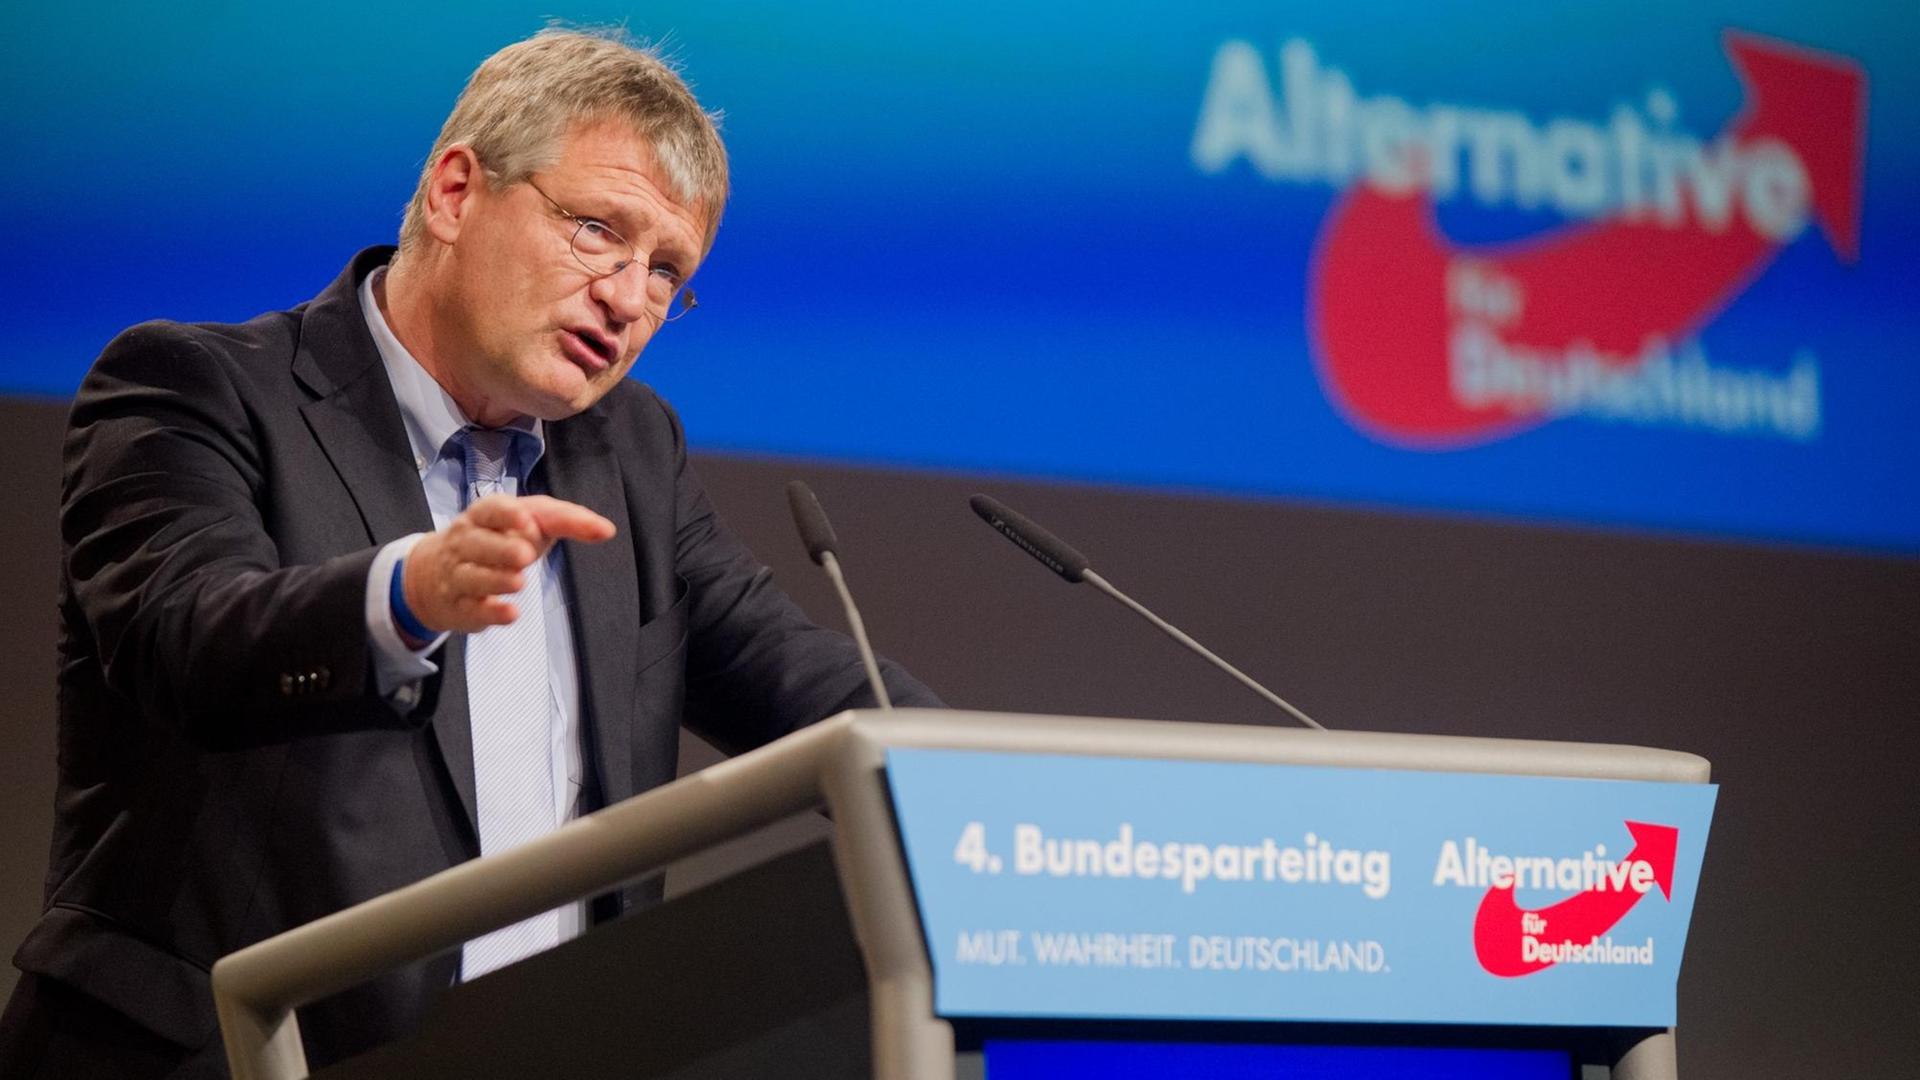 Der AfD-Politiker Jörg Meuthen auf dem Bundesparteitag in Hannover am 28.11.2015.